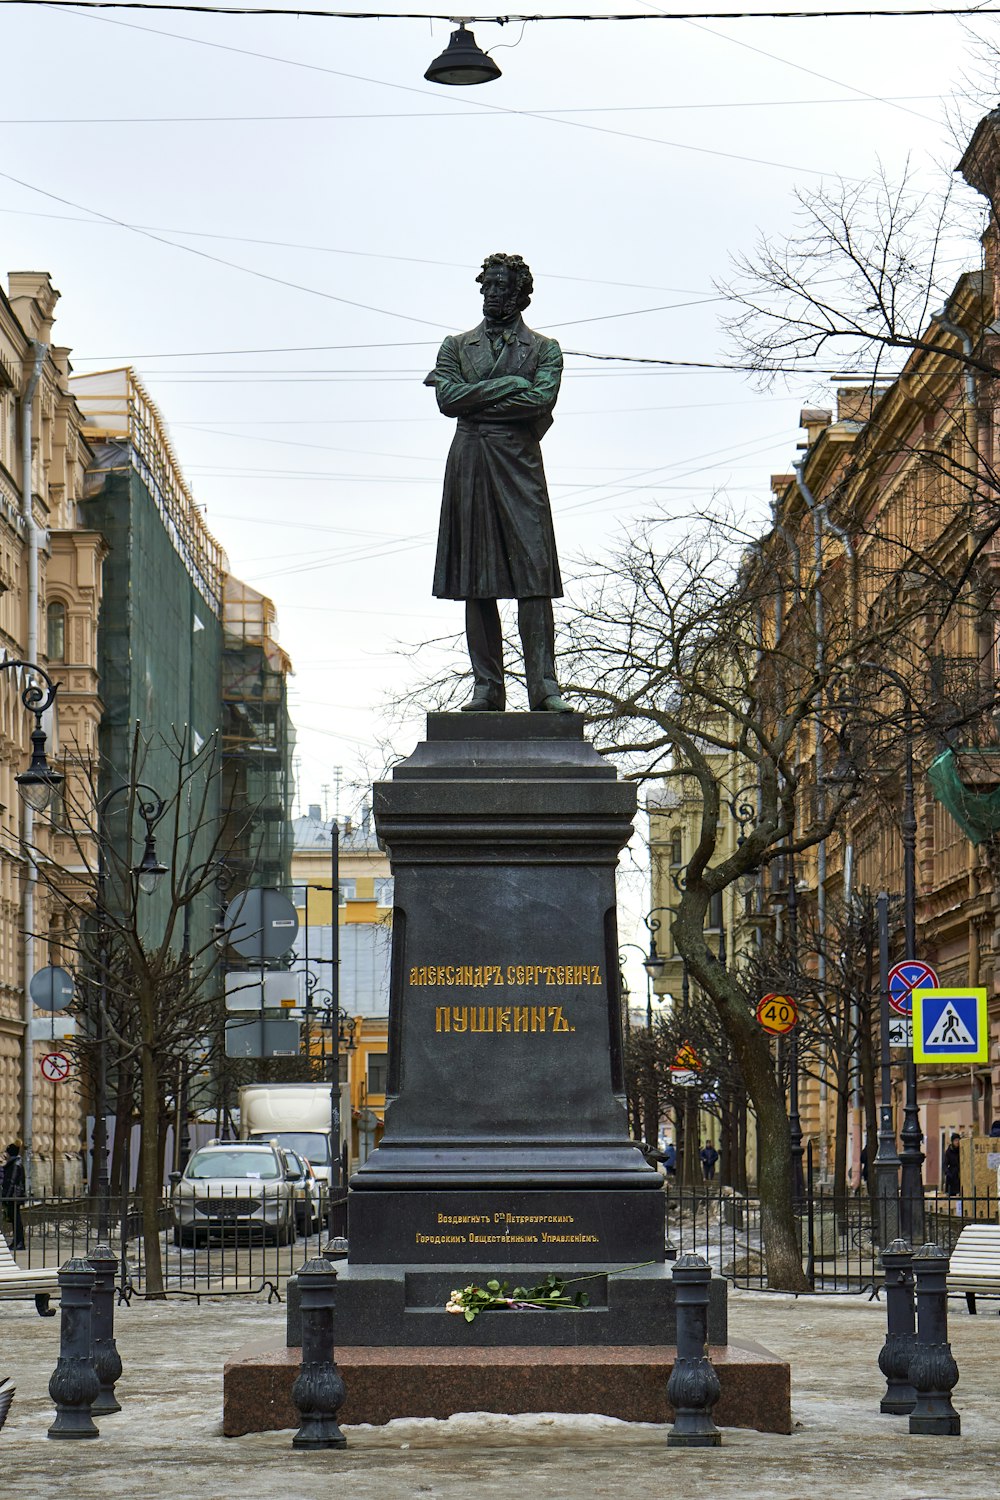 Una statua di un uomo in piedi sulla cima di un piedistallo